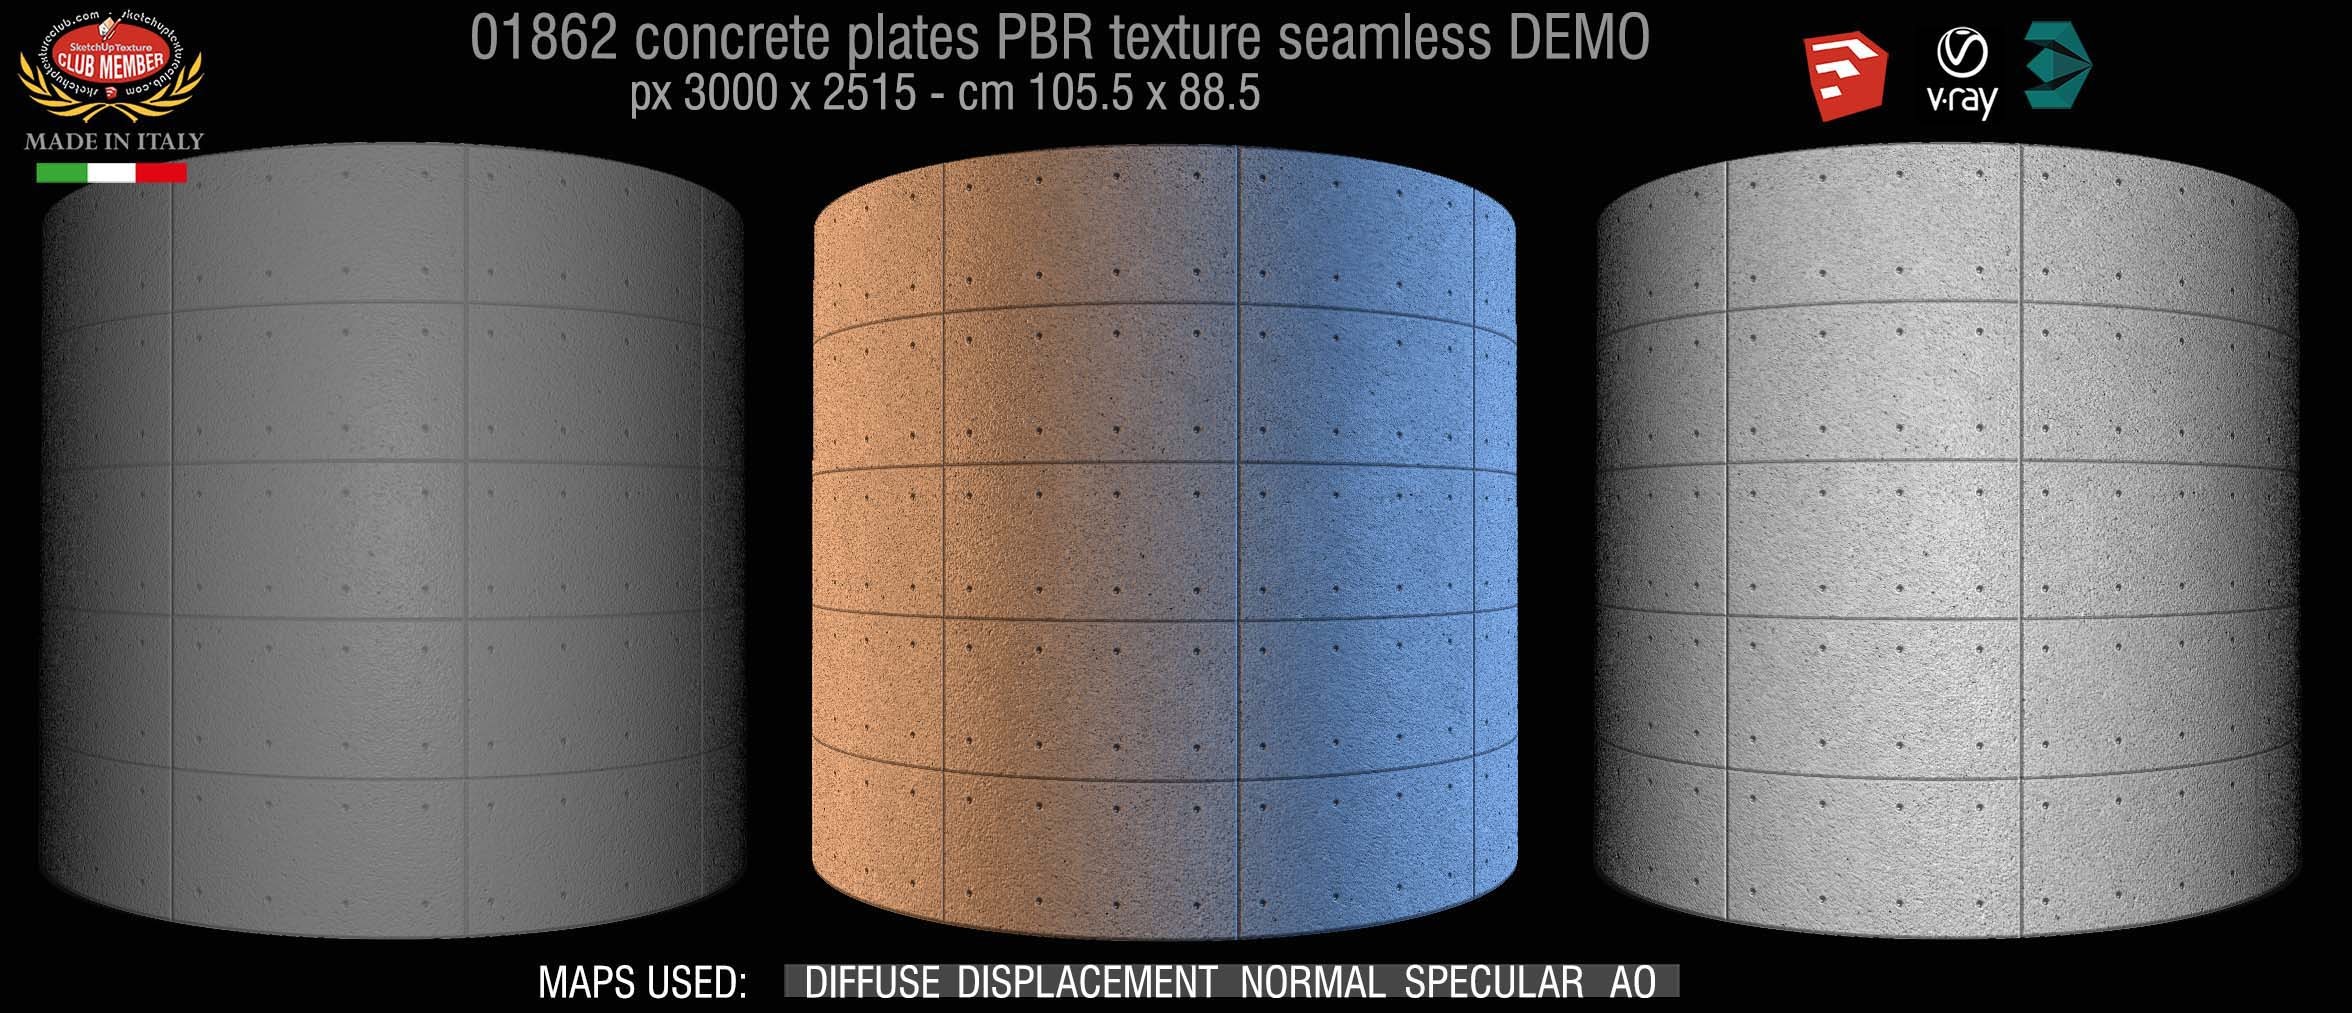 01862 Tadao Ando concrete plates PBR texture seamless DEMO